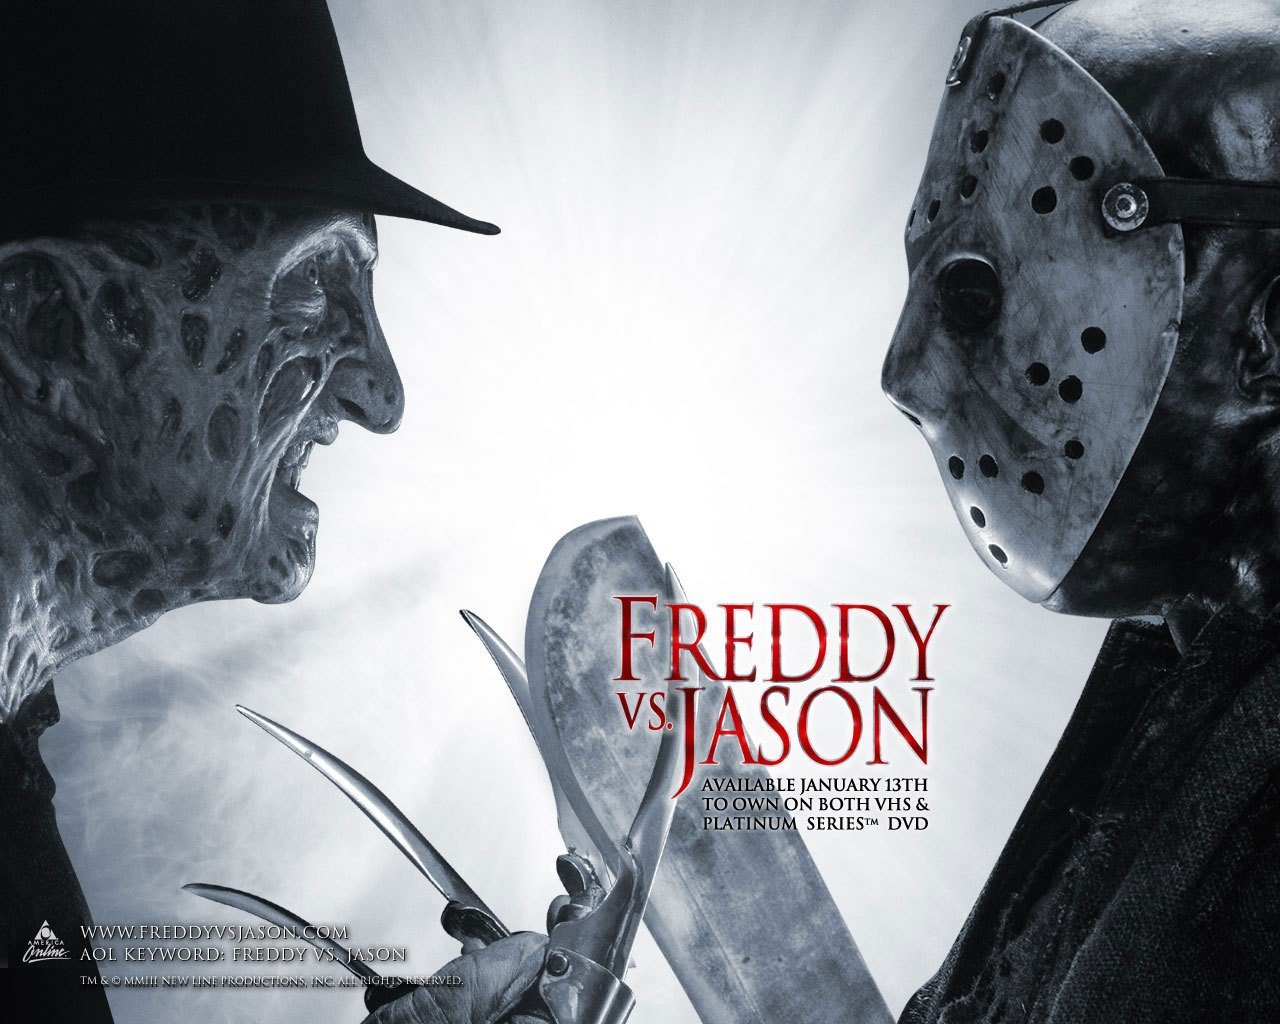 Freddy Krueger Friday The 13th Vs Jason HD Wallpaper